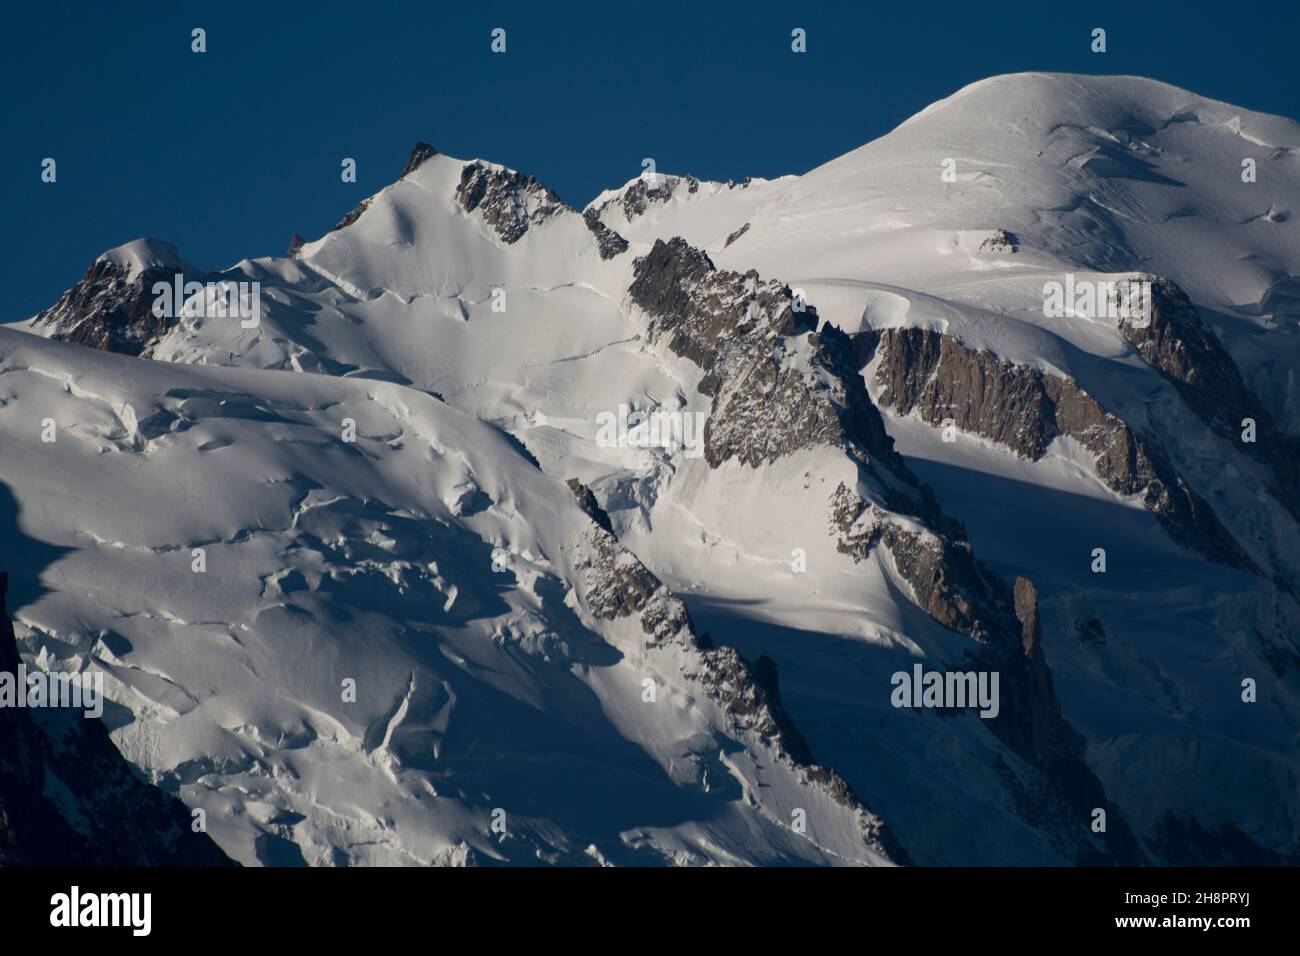 Morgendlicher Blick auf den Mont Blanc, Europas höchster Berg Stock Photo